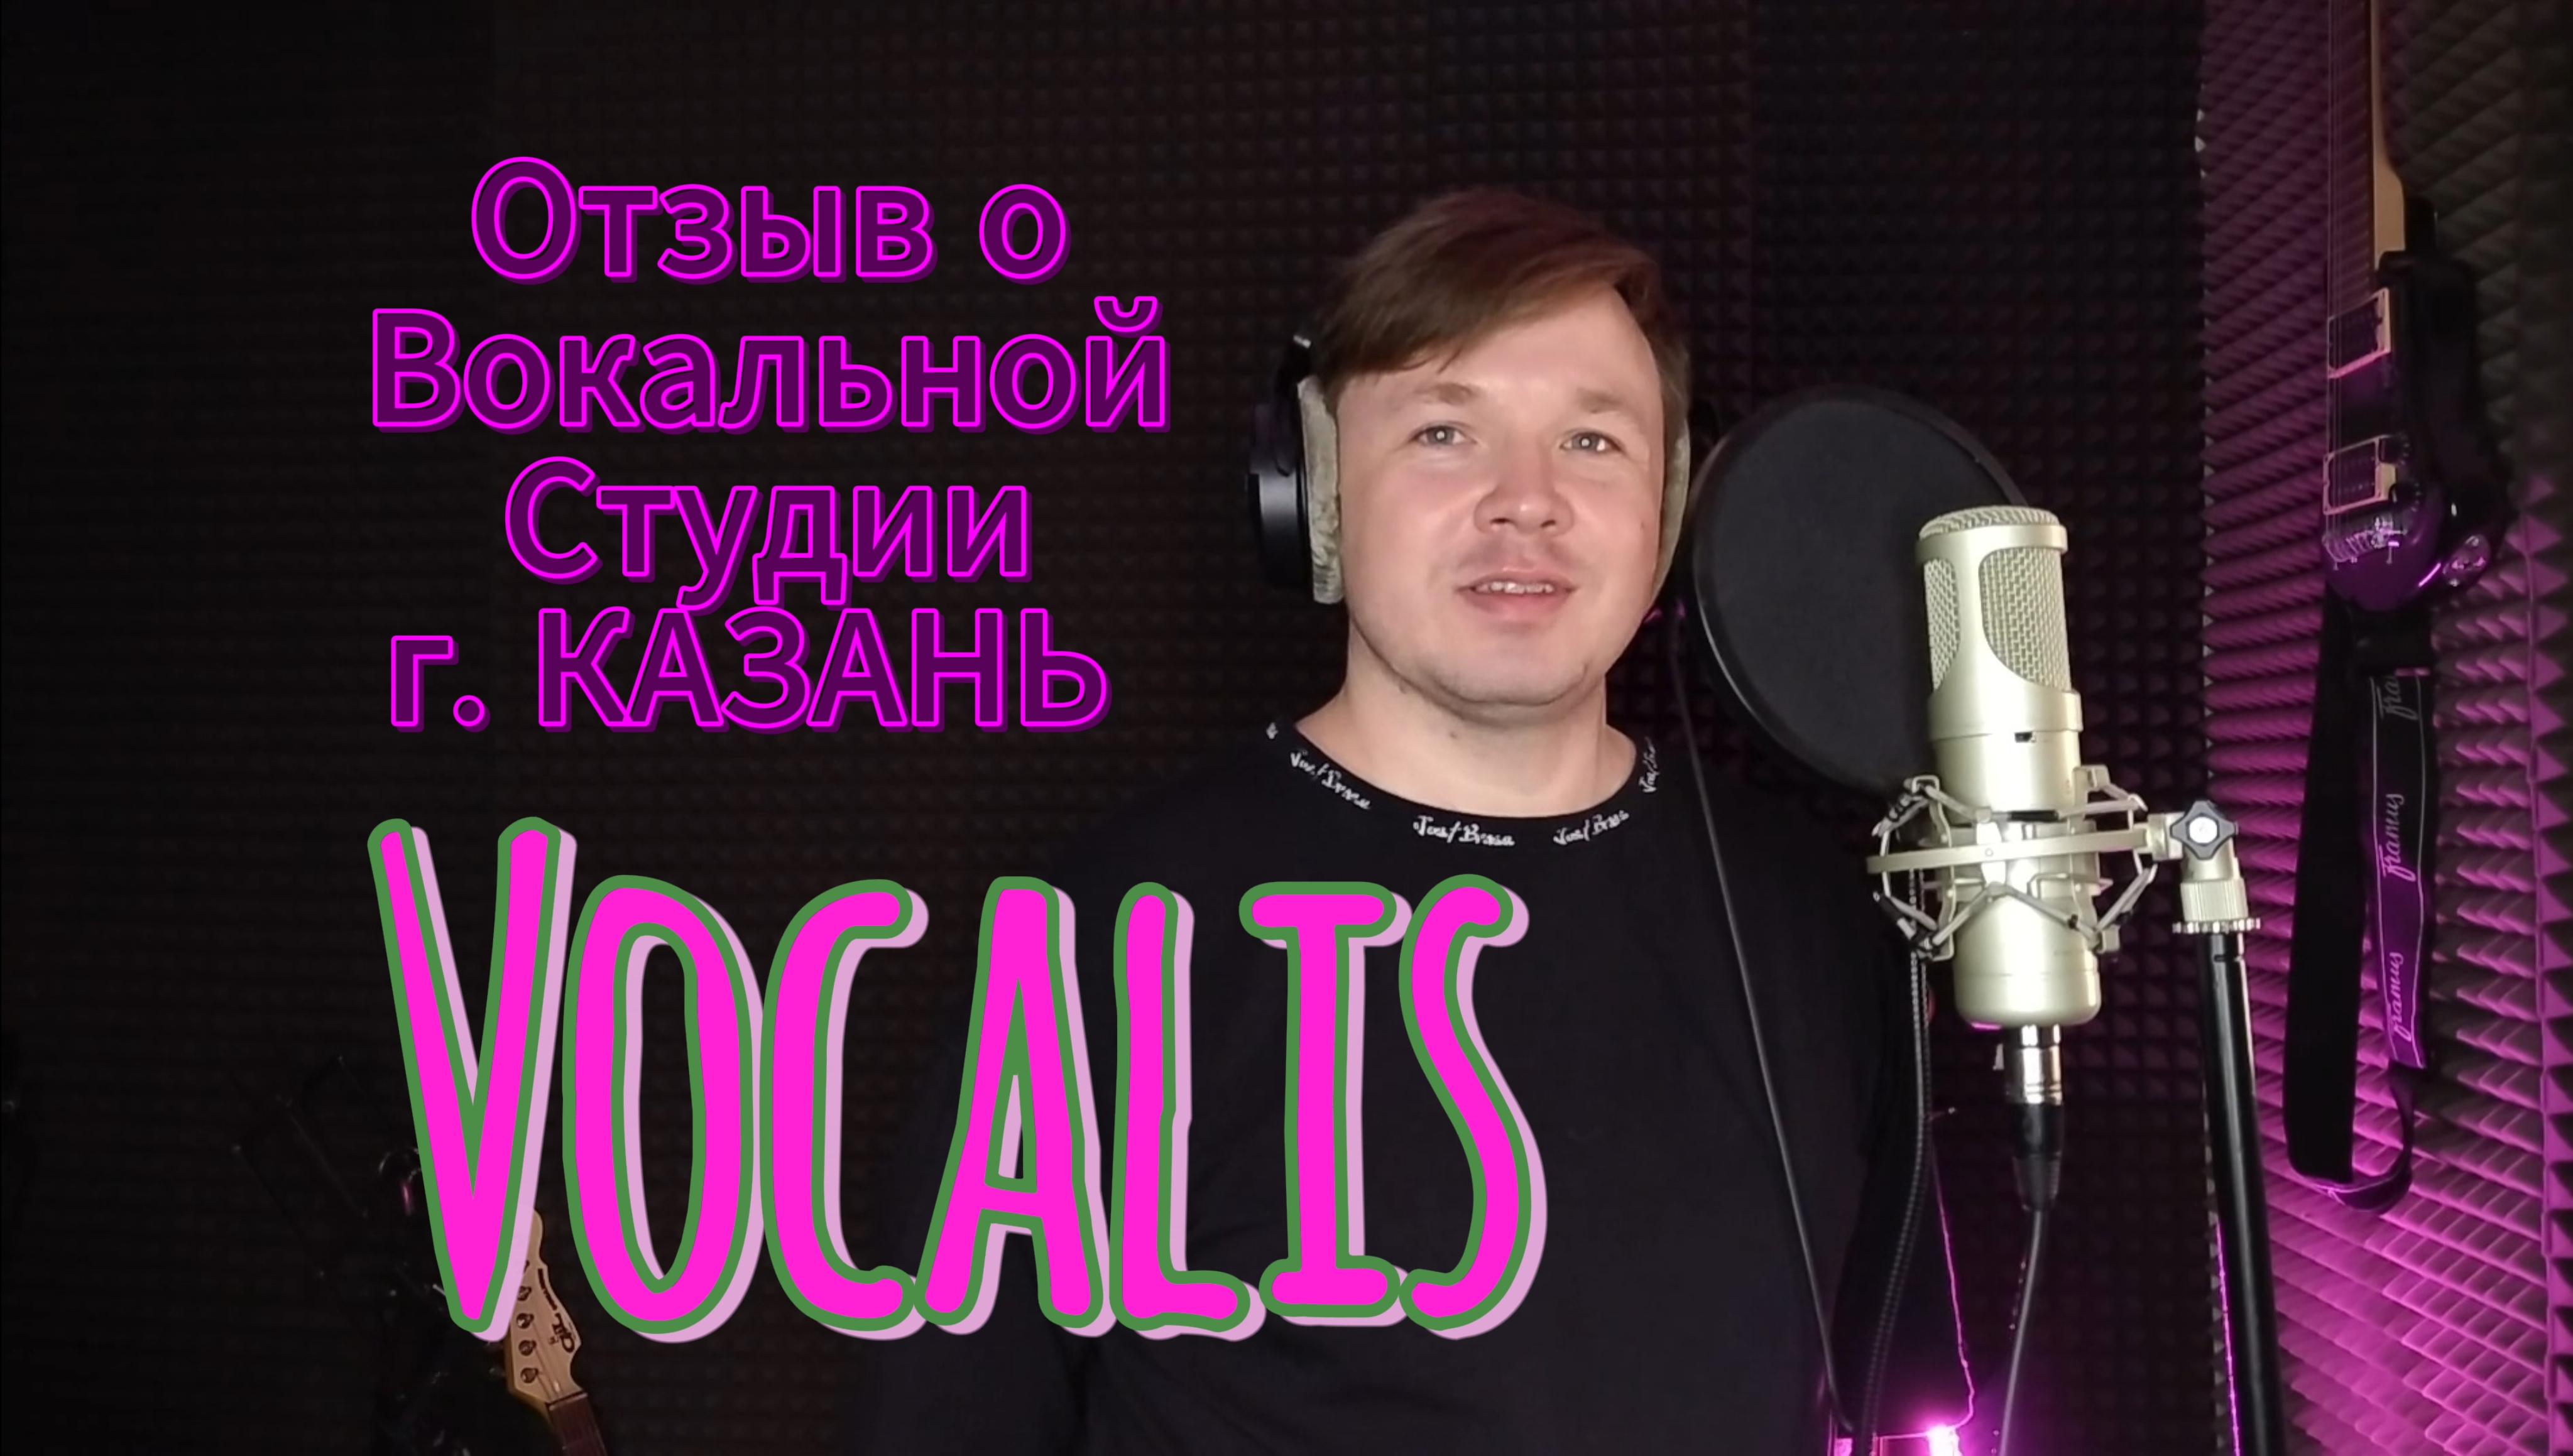 Отзыв о преподавателе вокала - Лилии Чугуновой и студии VOCAL IS.